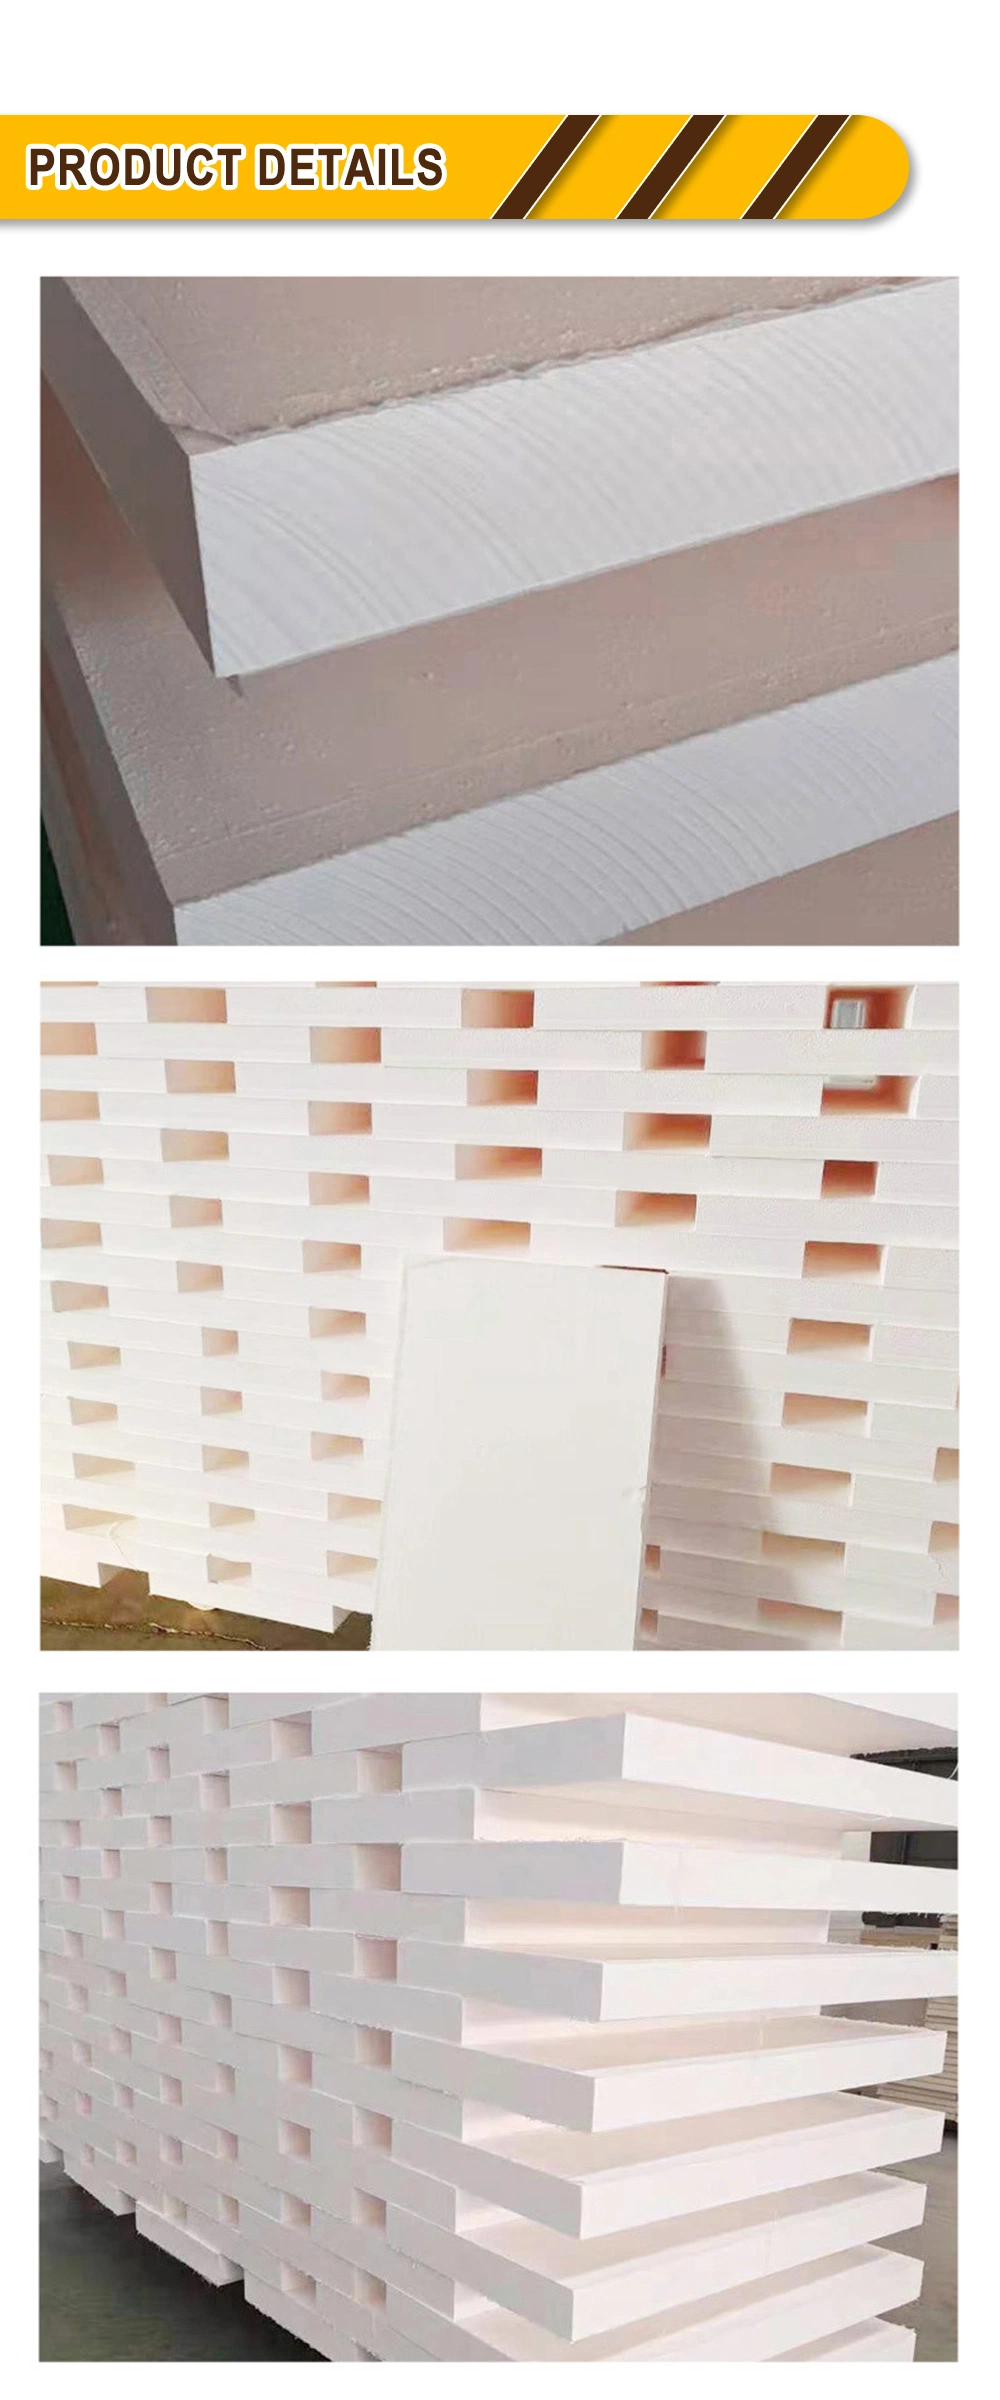 Electronics Insulation Phenolic Paper Based Laminated Board